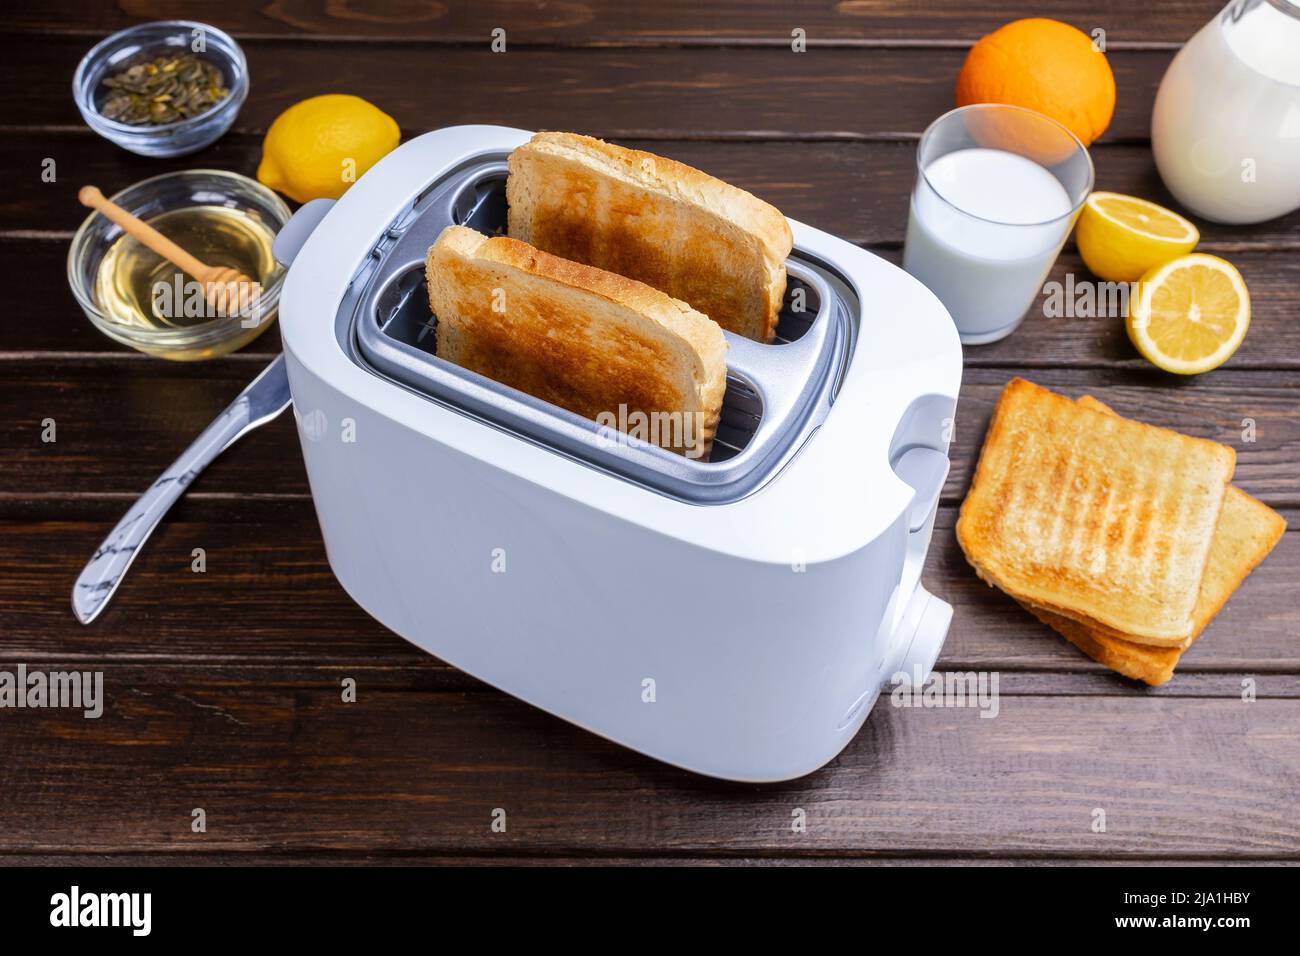 Des tranches de pain grillé sortent du grille-pain. Un petit déjeuner sain et un concept de technologie de chauffage. Banque D'Images